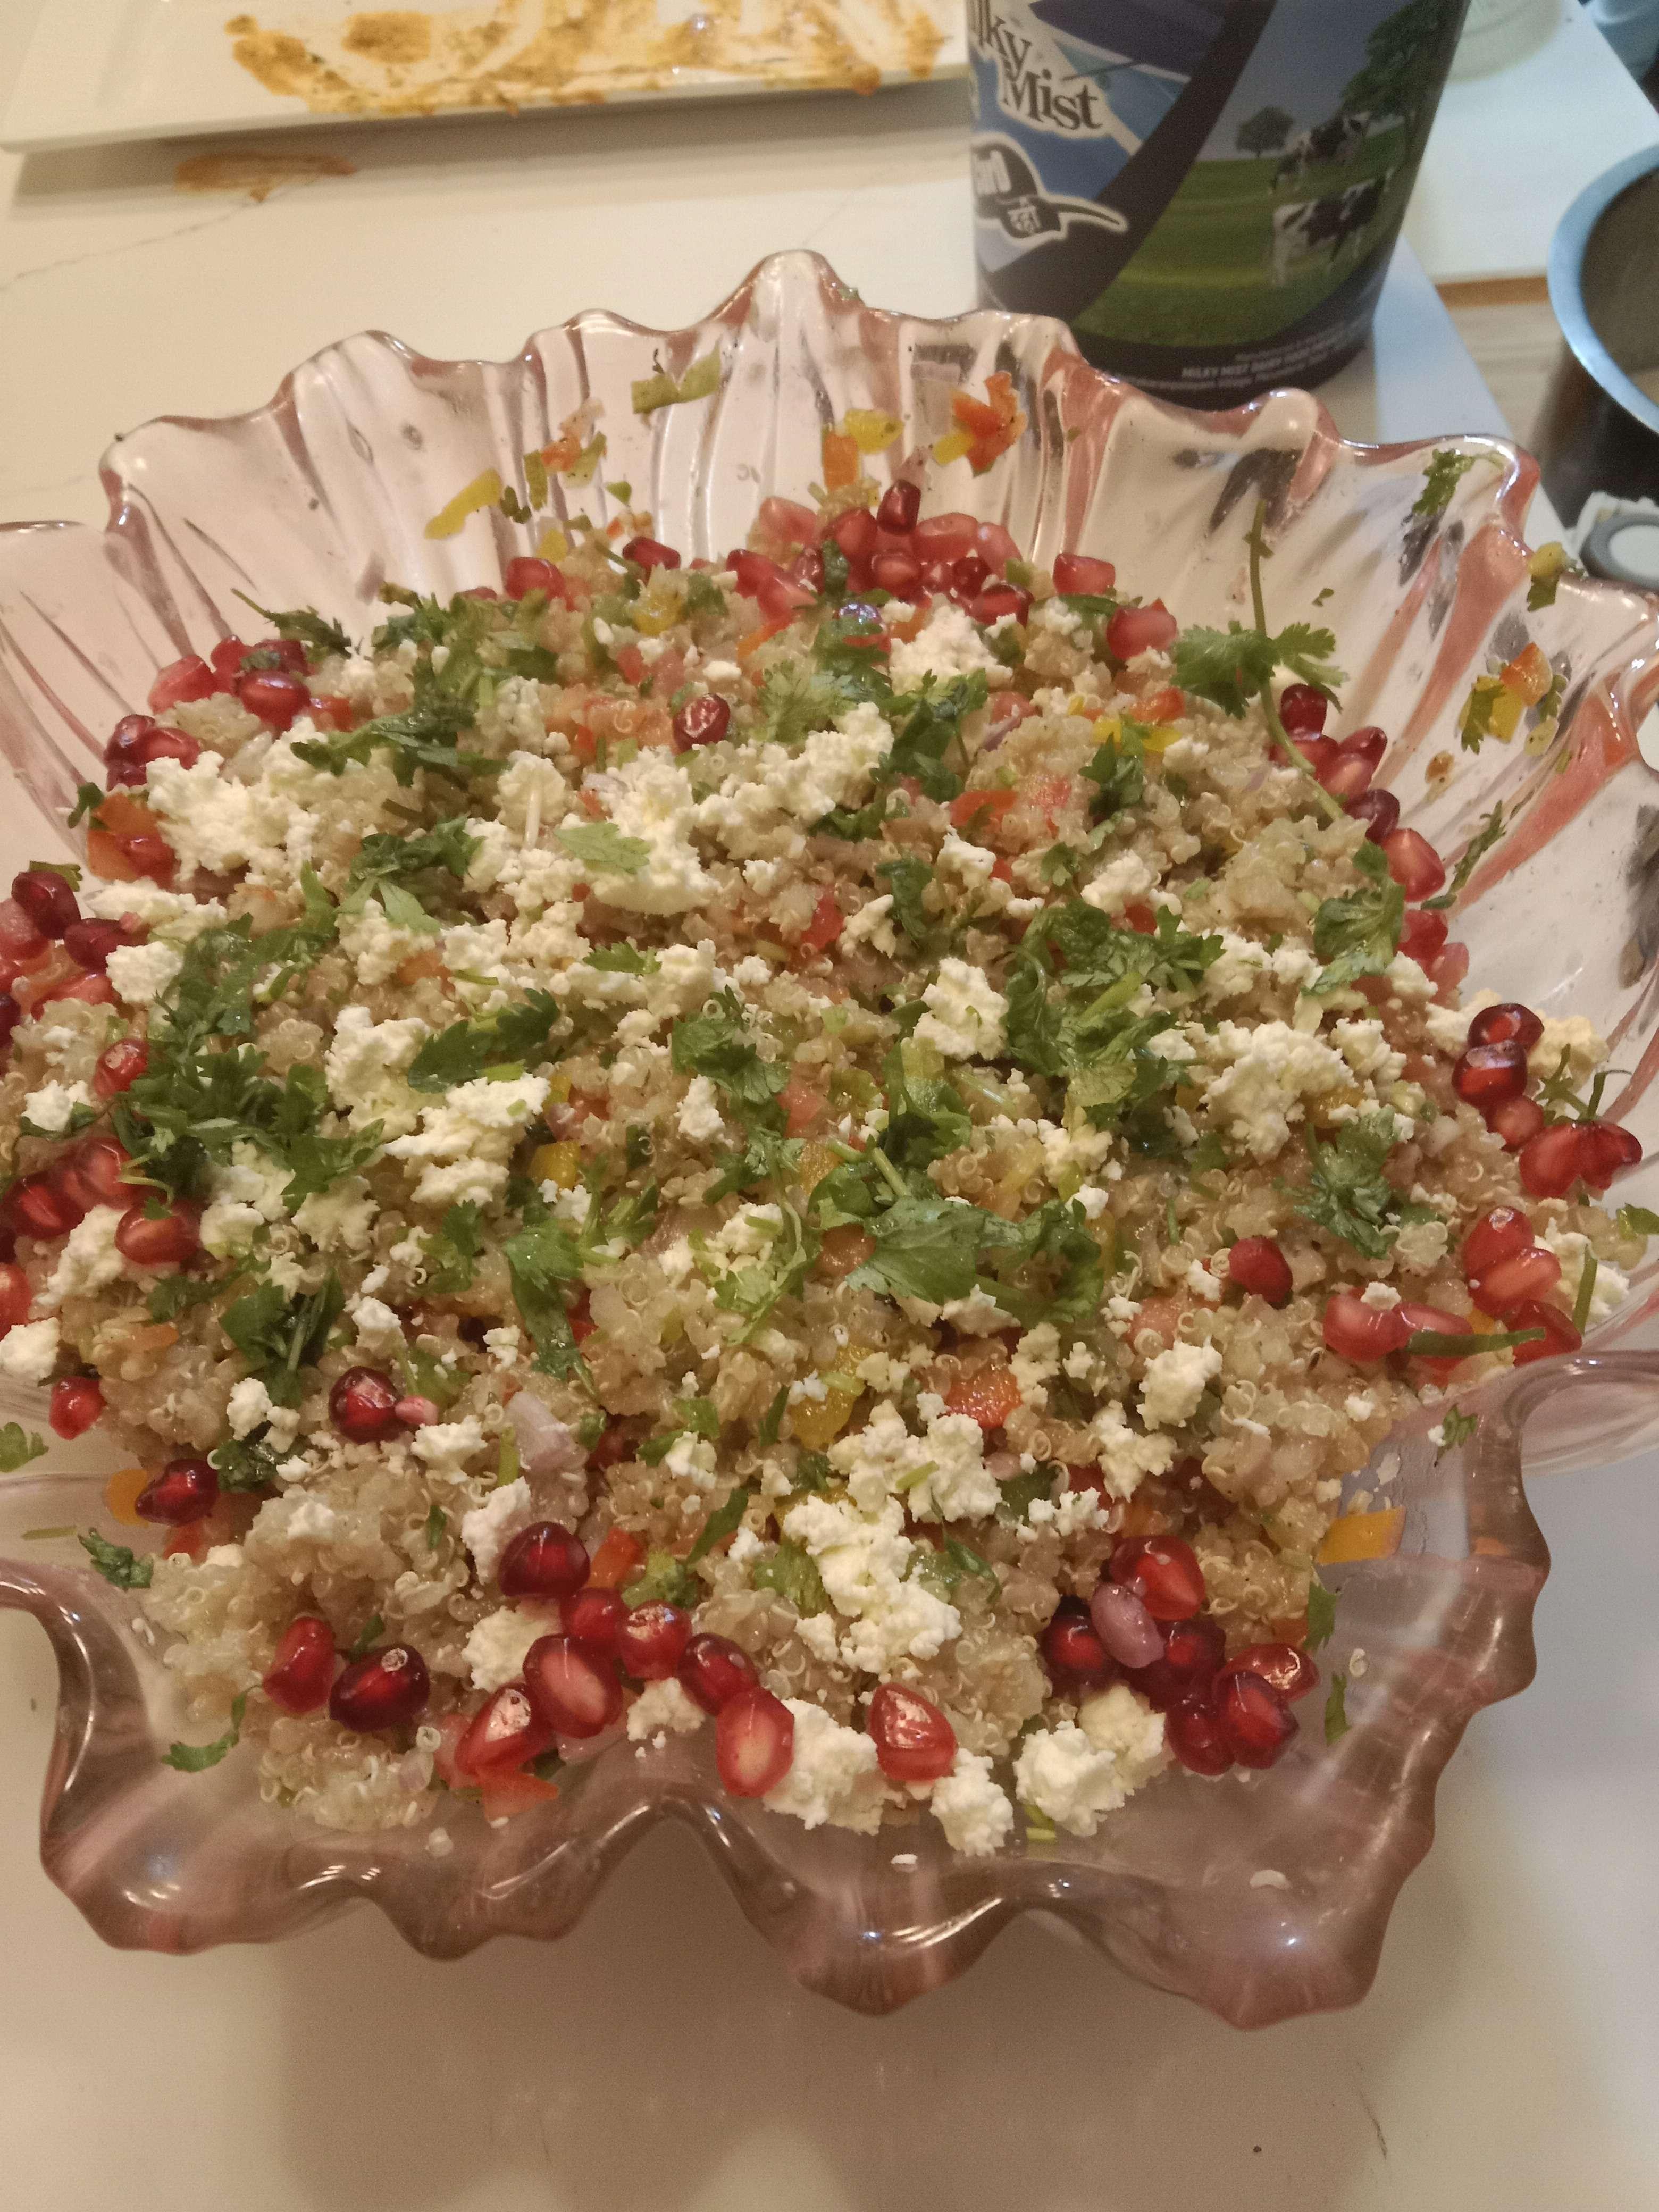 Delicious Quinoa Salad prepared by COOX